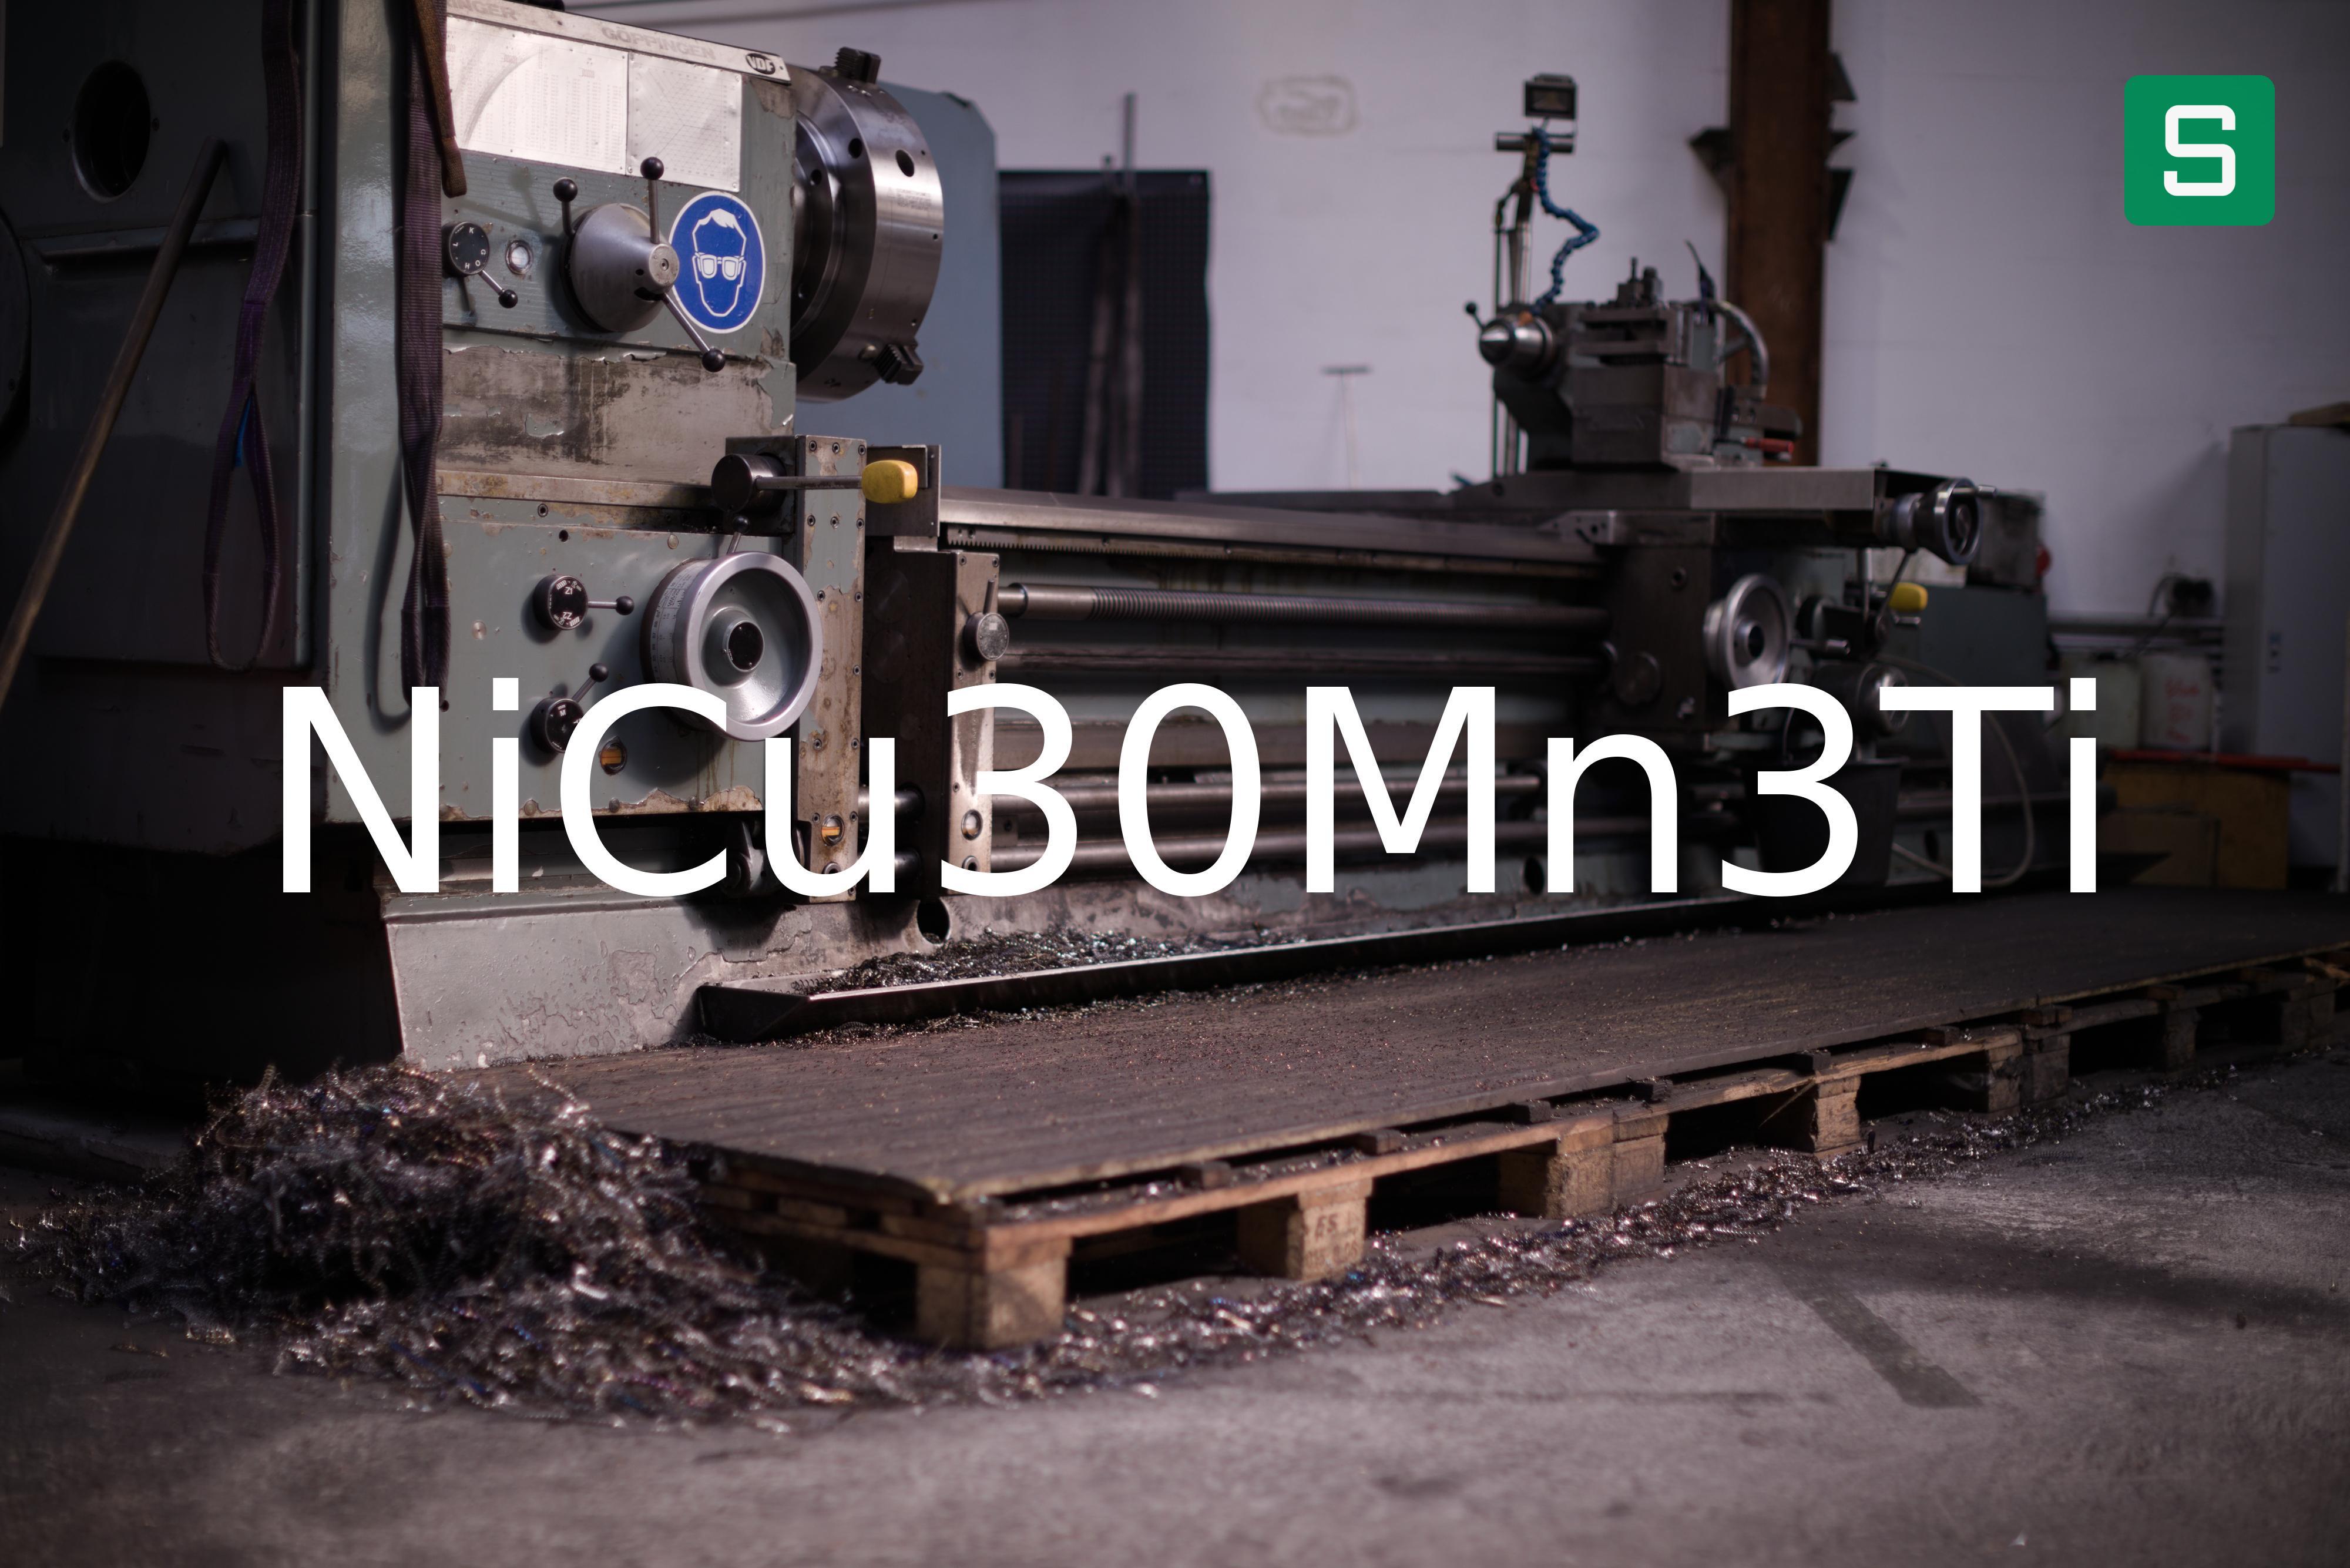 Steel Material: NiCu30Mn3Ti